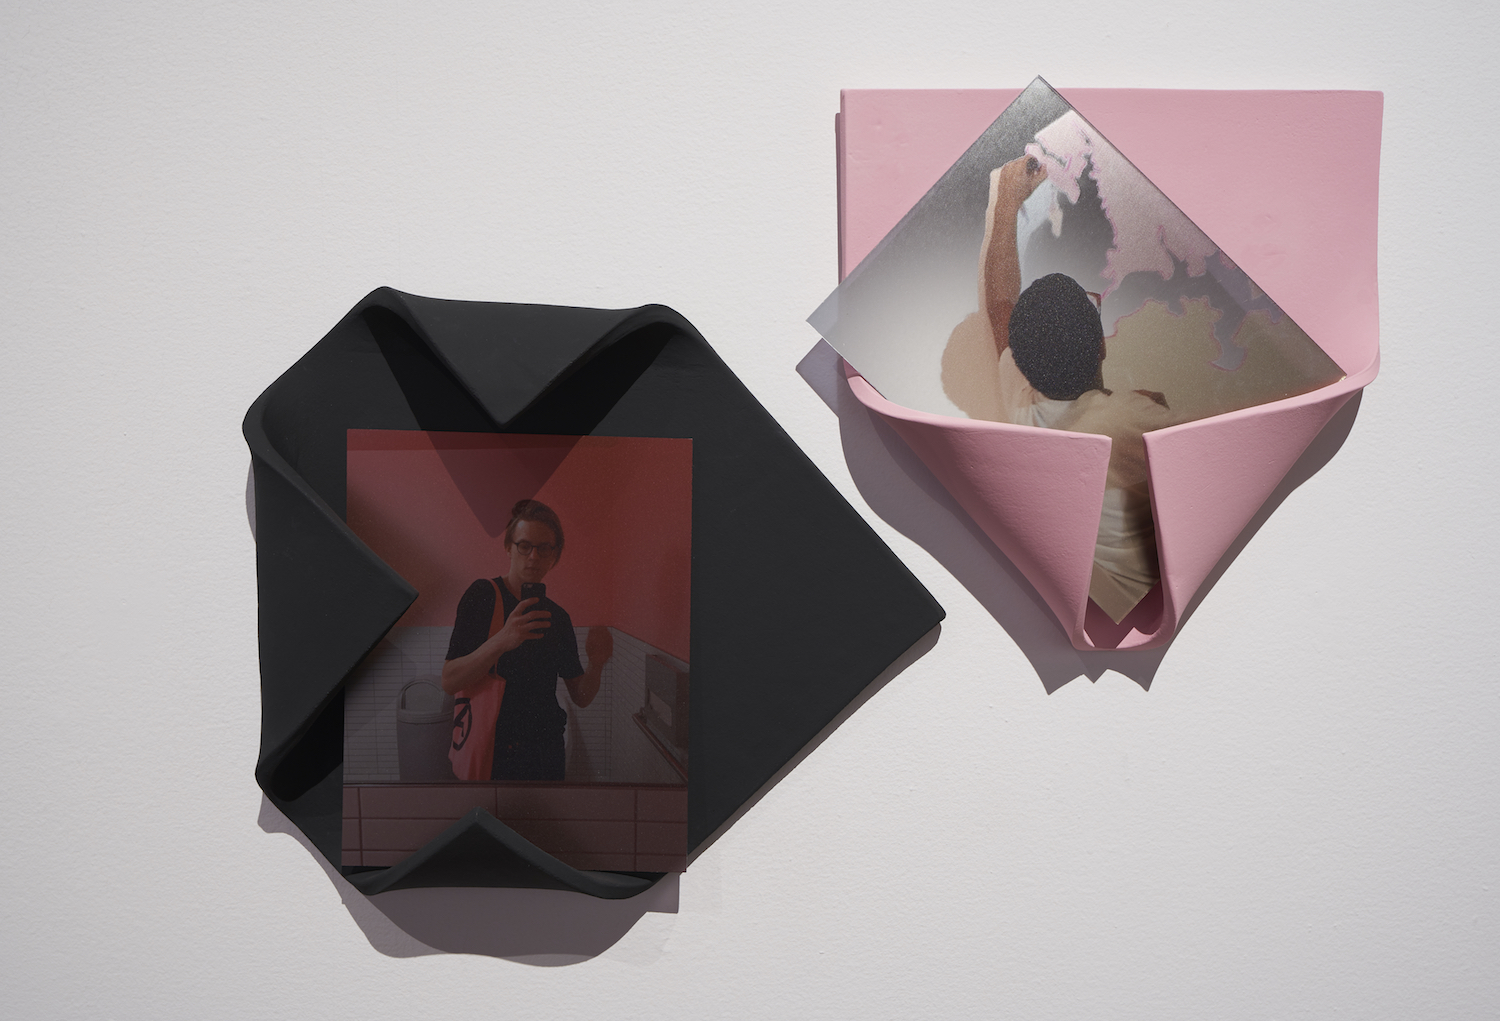 Karin Schneider, *H(AK/BP+STMP) and H(CLM/PP+STMP)*, 2018. Ceramic and see-through mirror plexiglas. Detail view